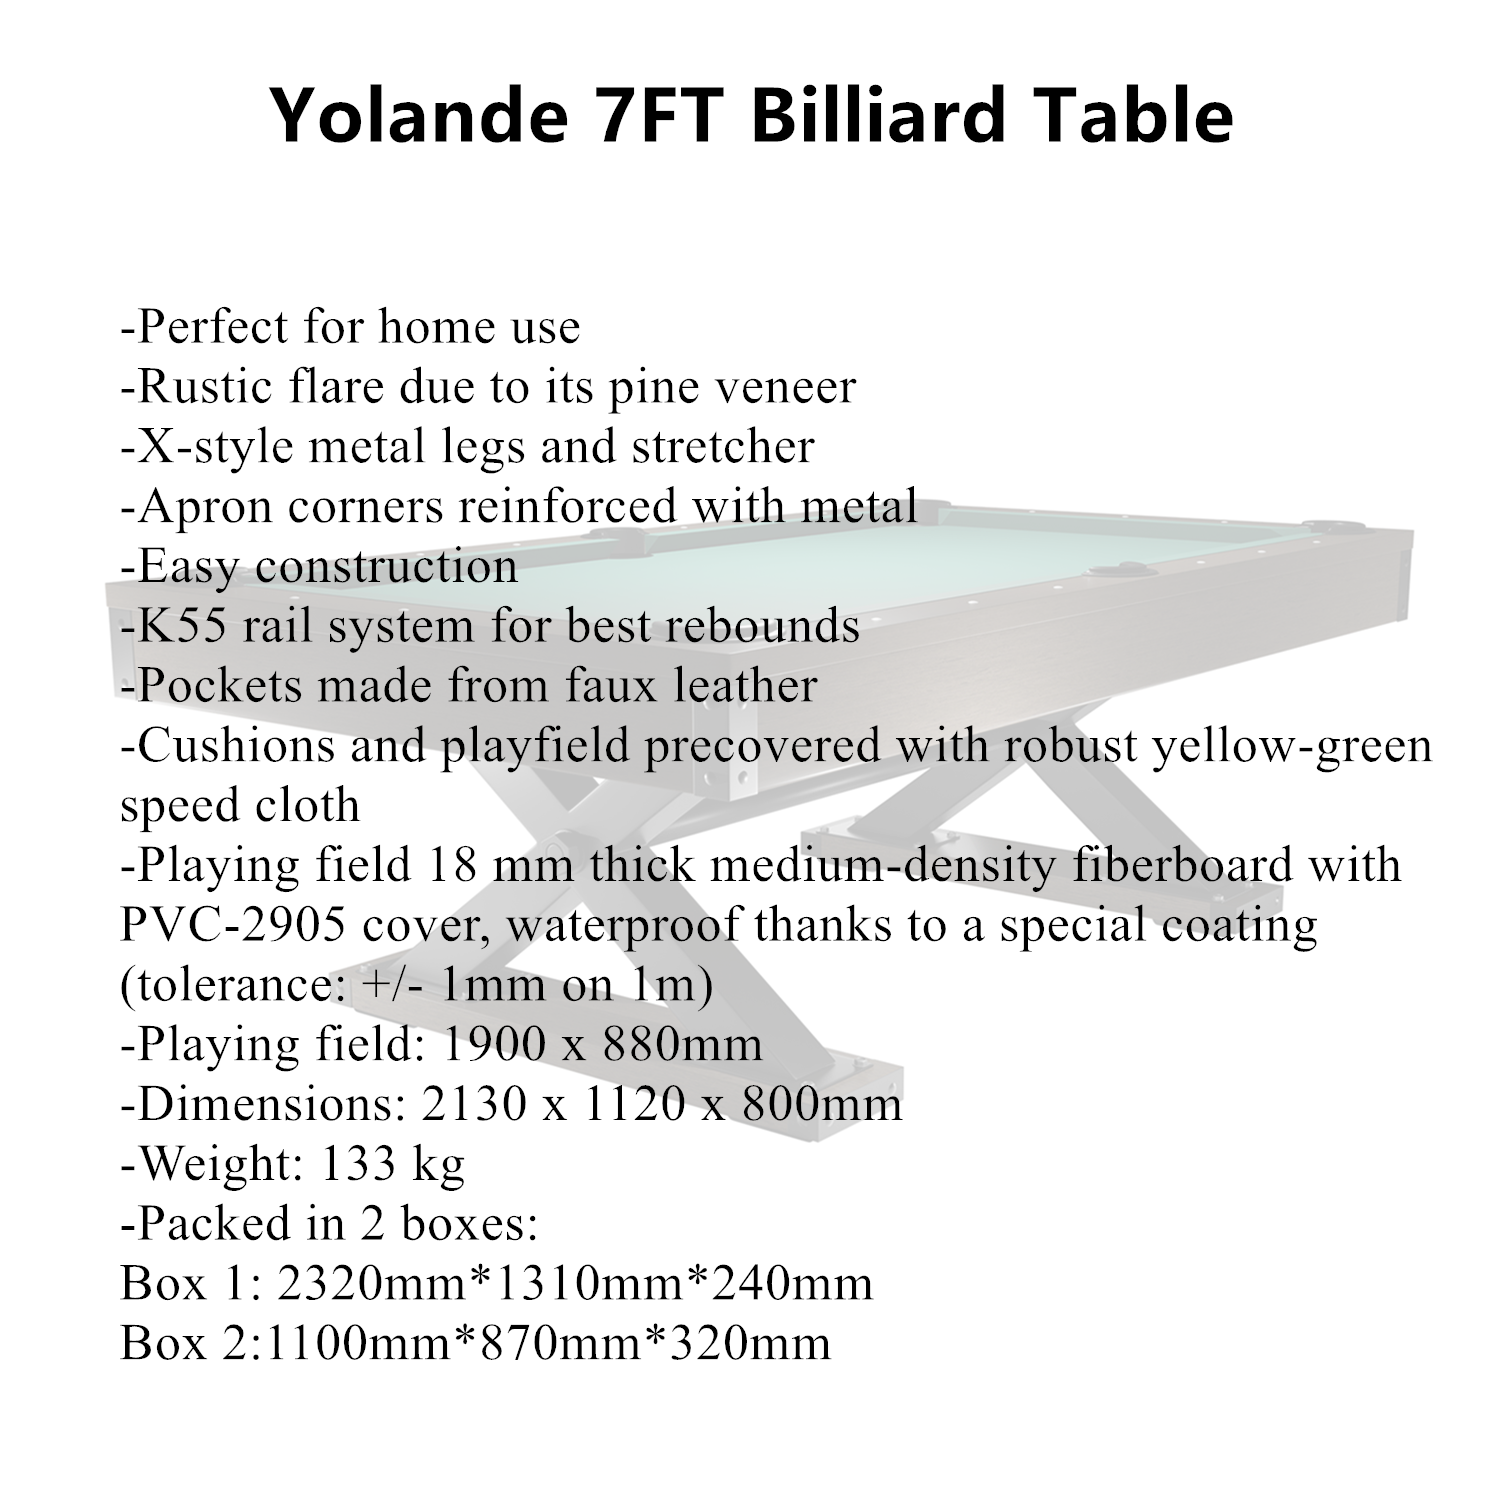 Yolande 7FT Billiard Table